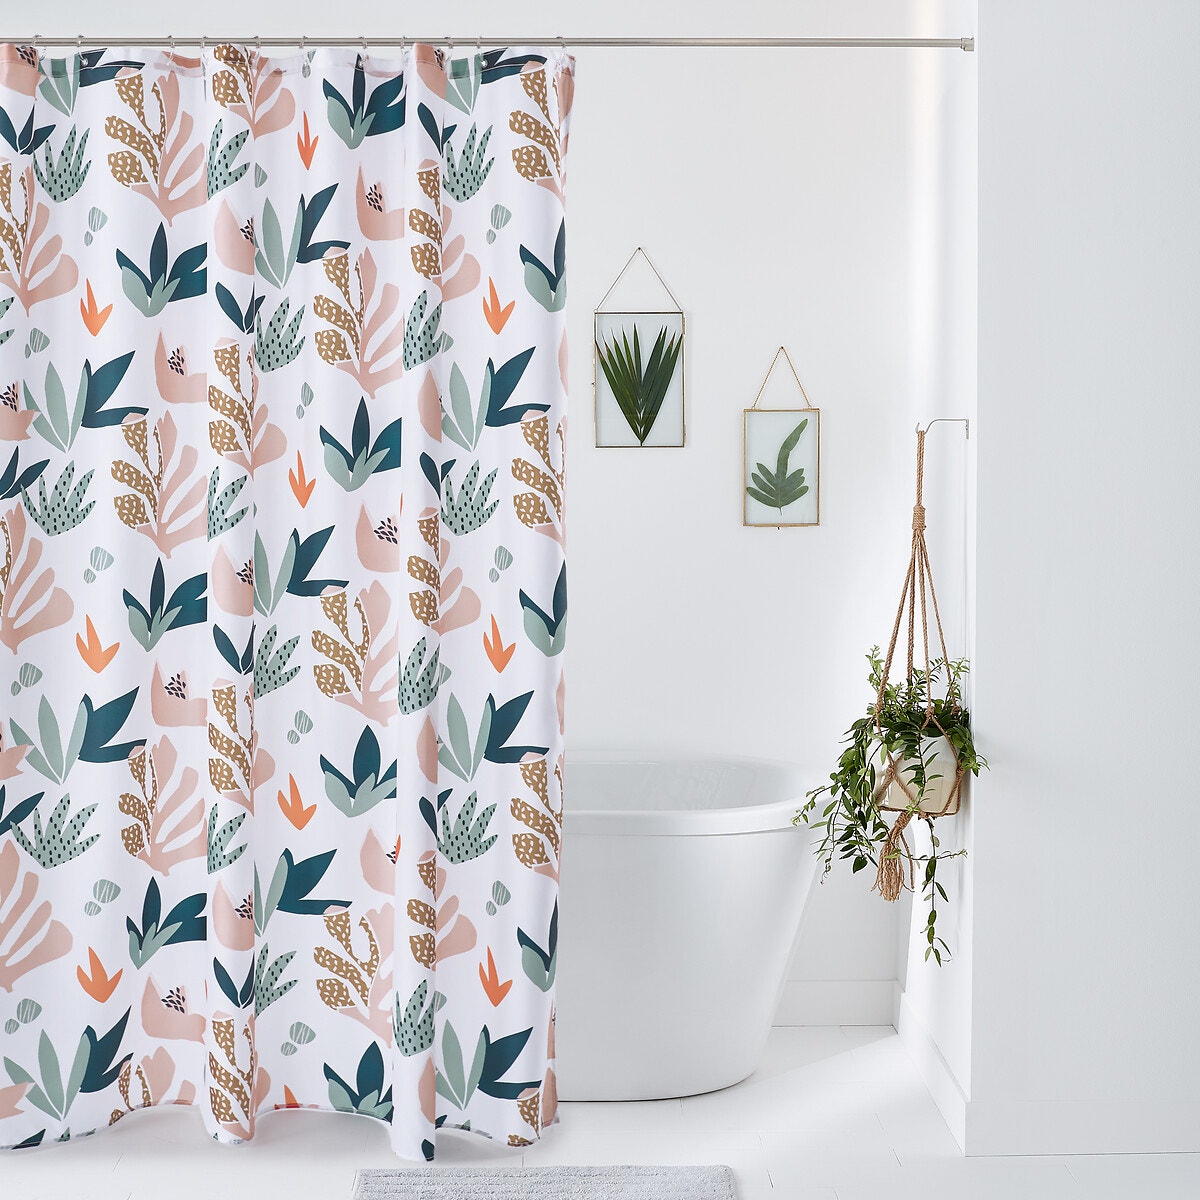 Σπίτι > Λευκά είδη > Μπάνιο > Κουρτίνες μπάνιου Κουρτίνα μπάνιου με εμπριμέ μοτίβο 200x180 cm